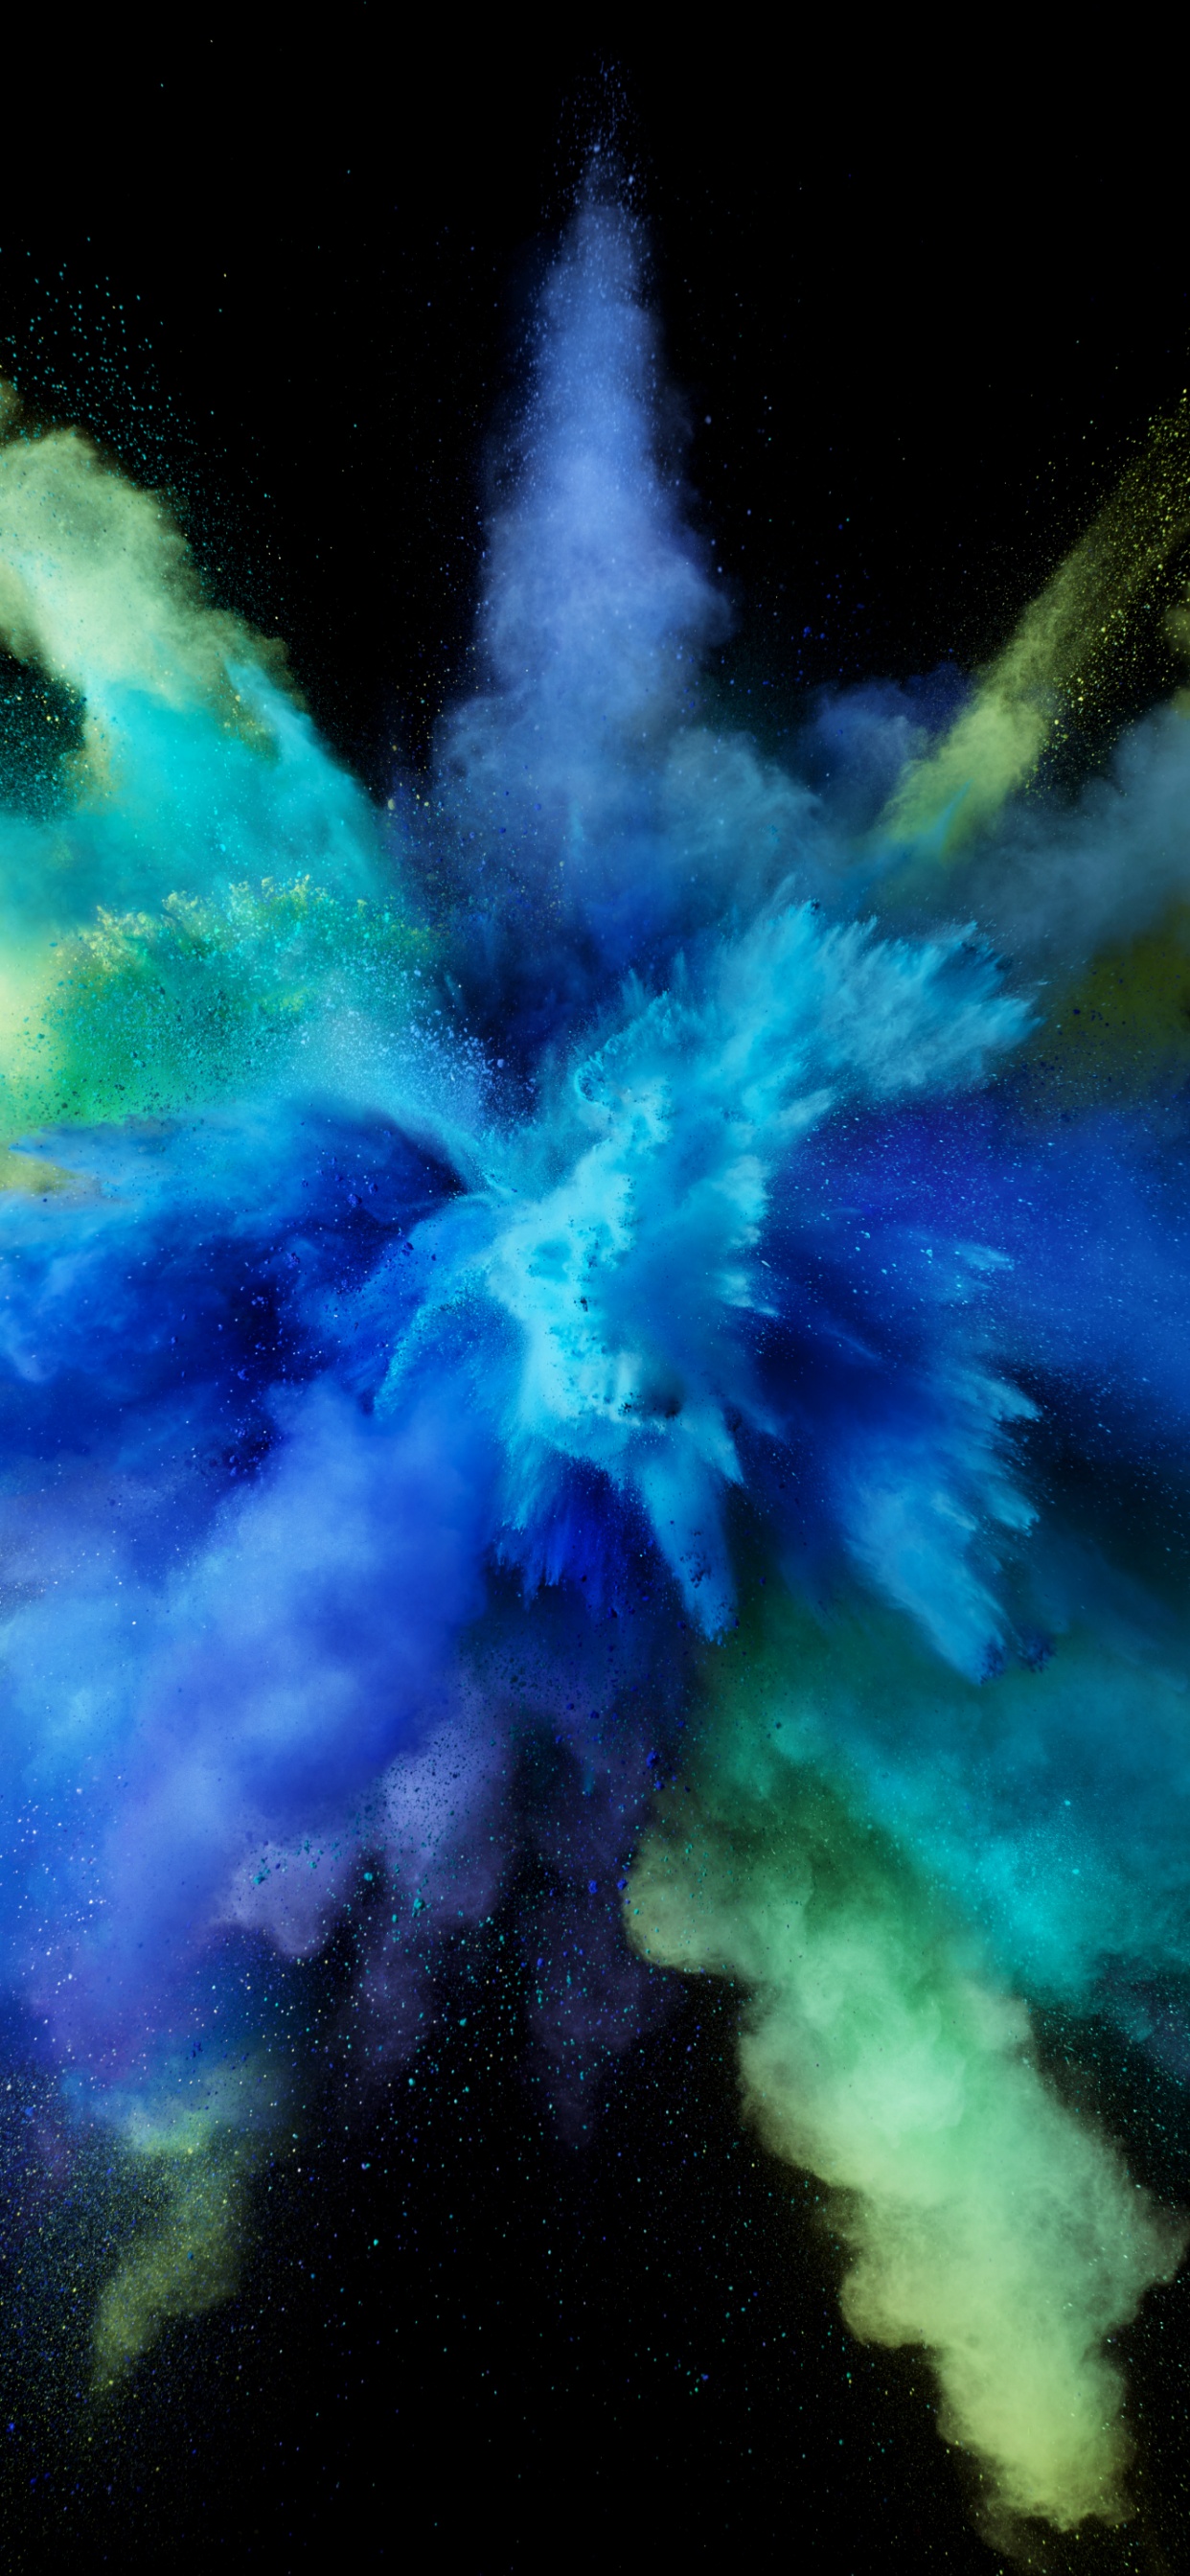 Color burst Wallpaper 4K, Splash, Blue, Black background, macOS Sierra